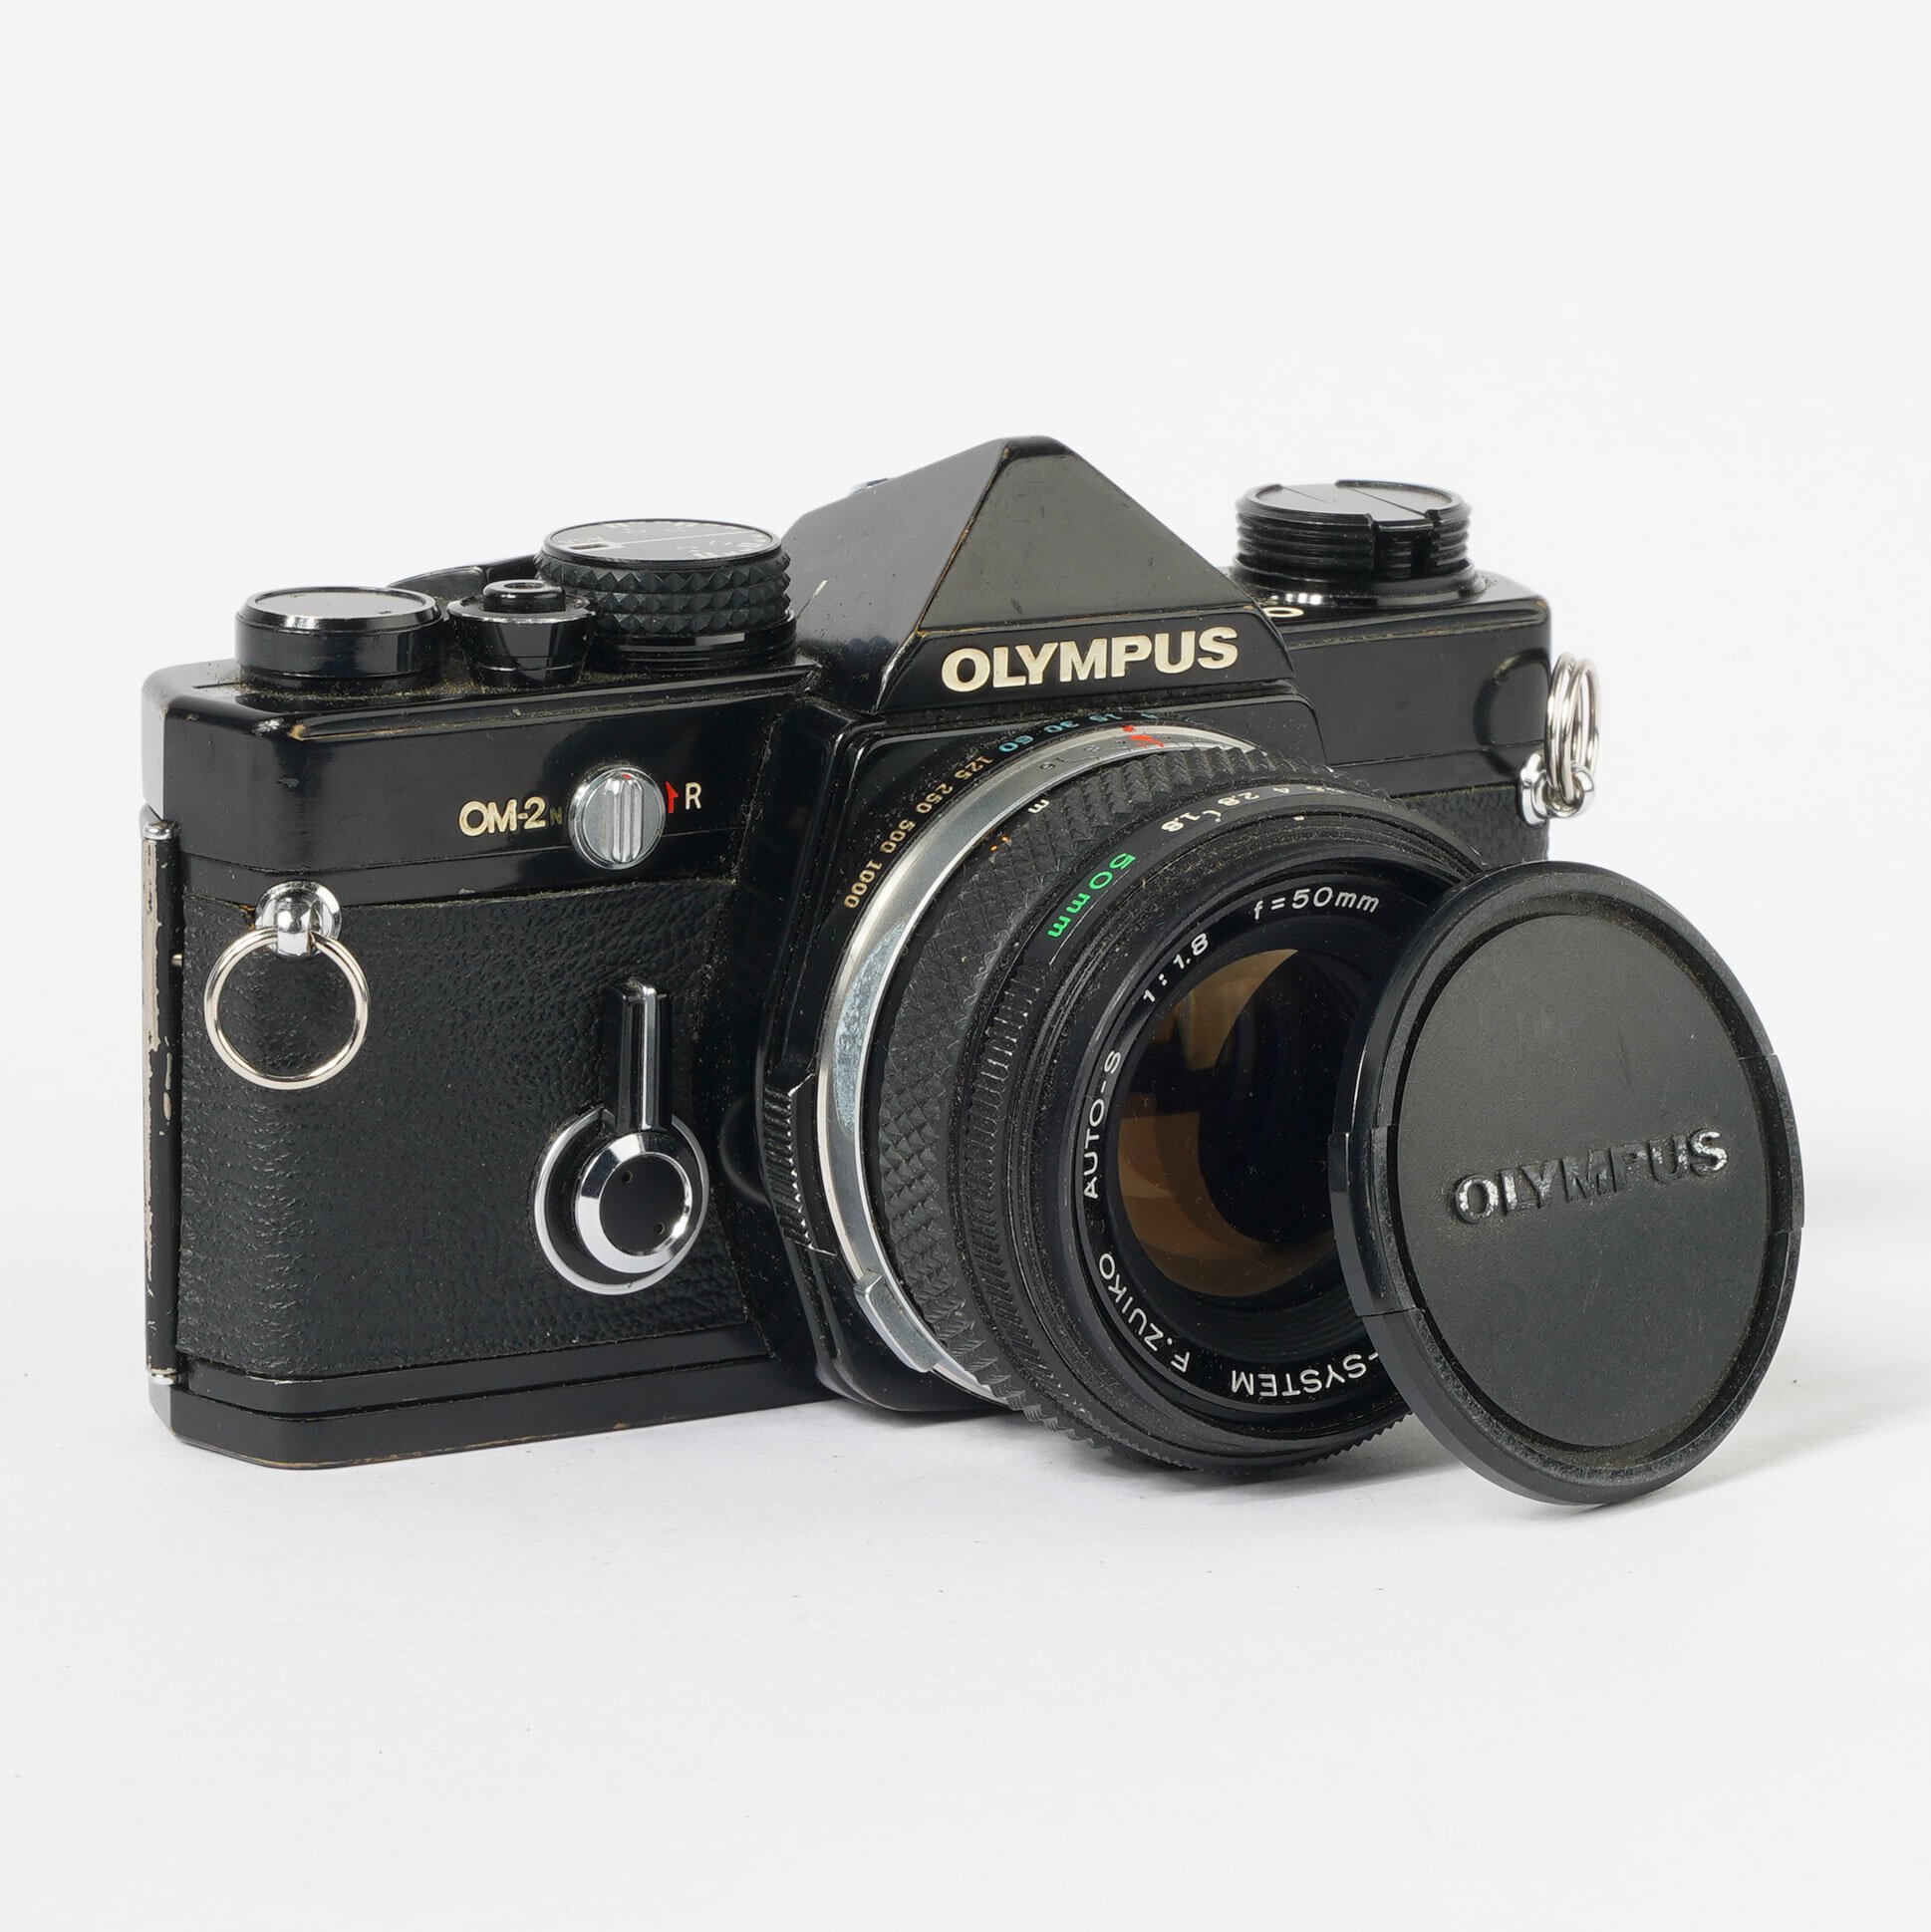 Olympus OM-2n Auto-S 1.8/50mm